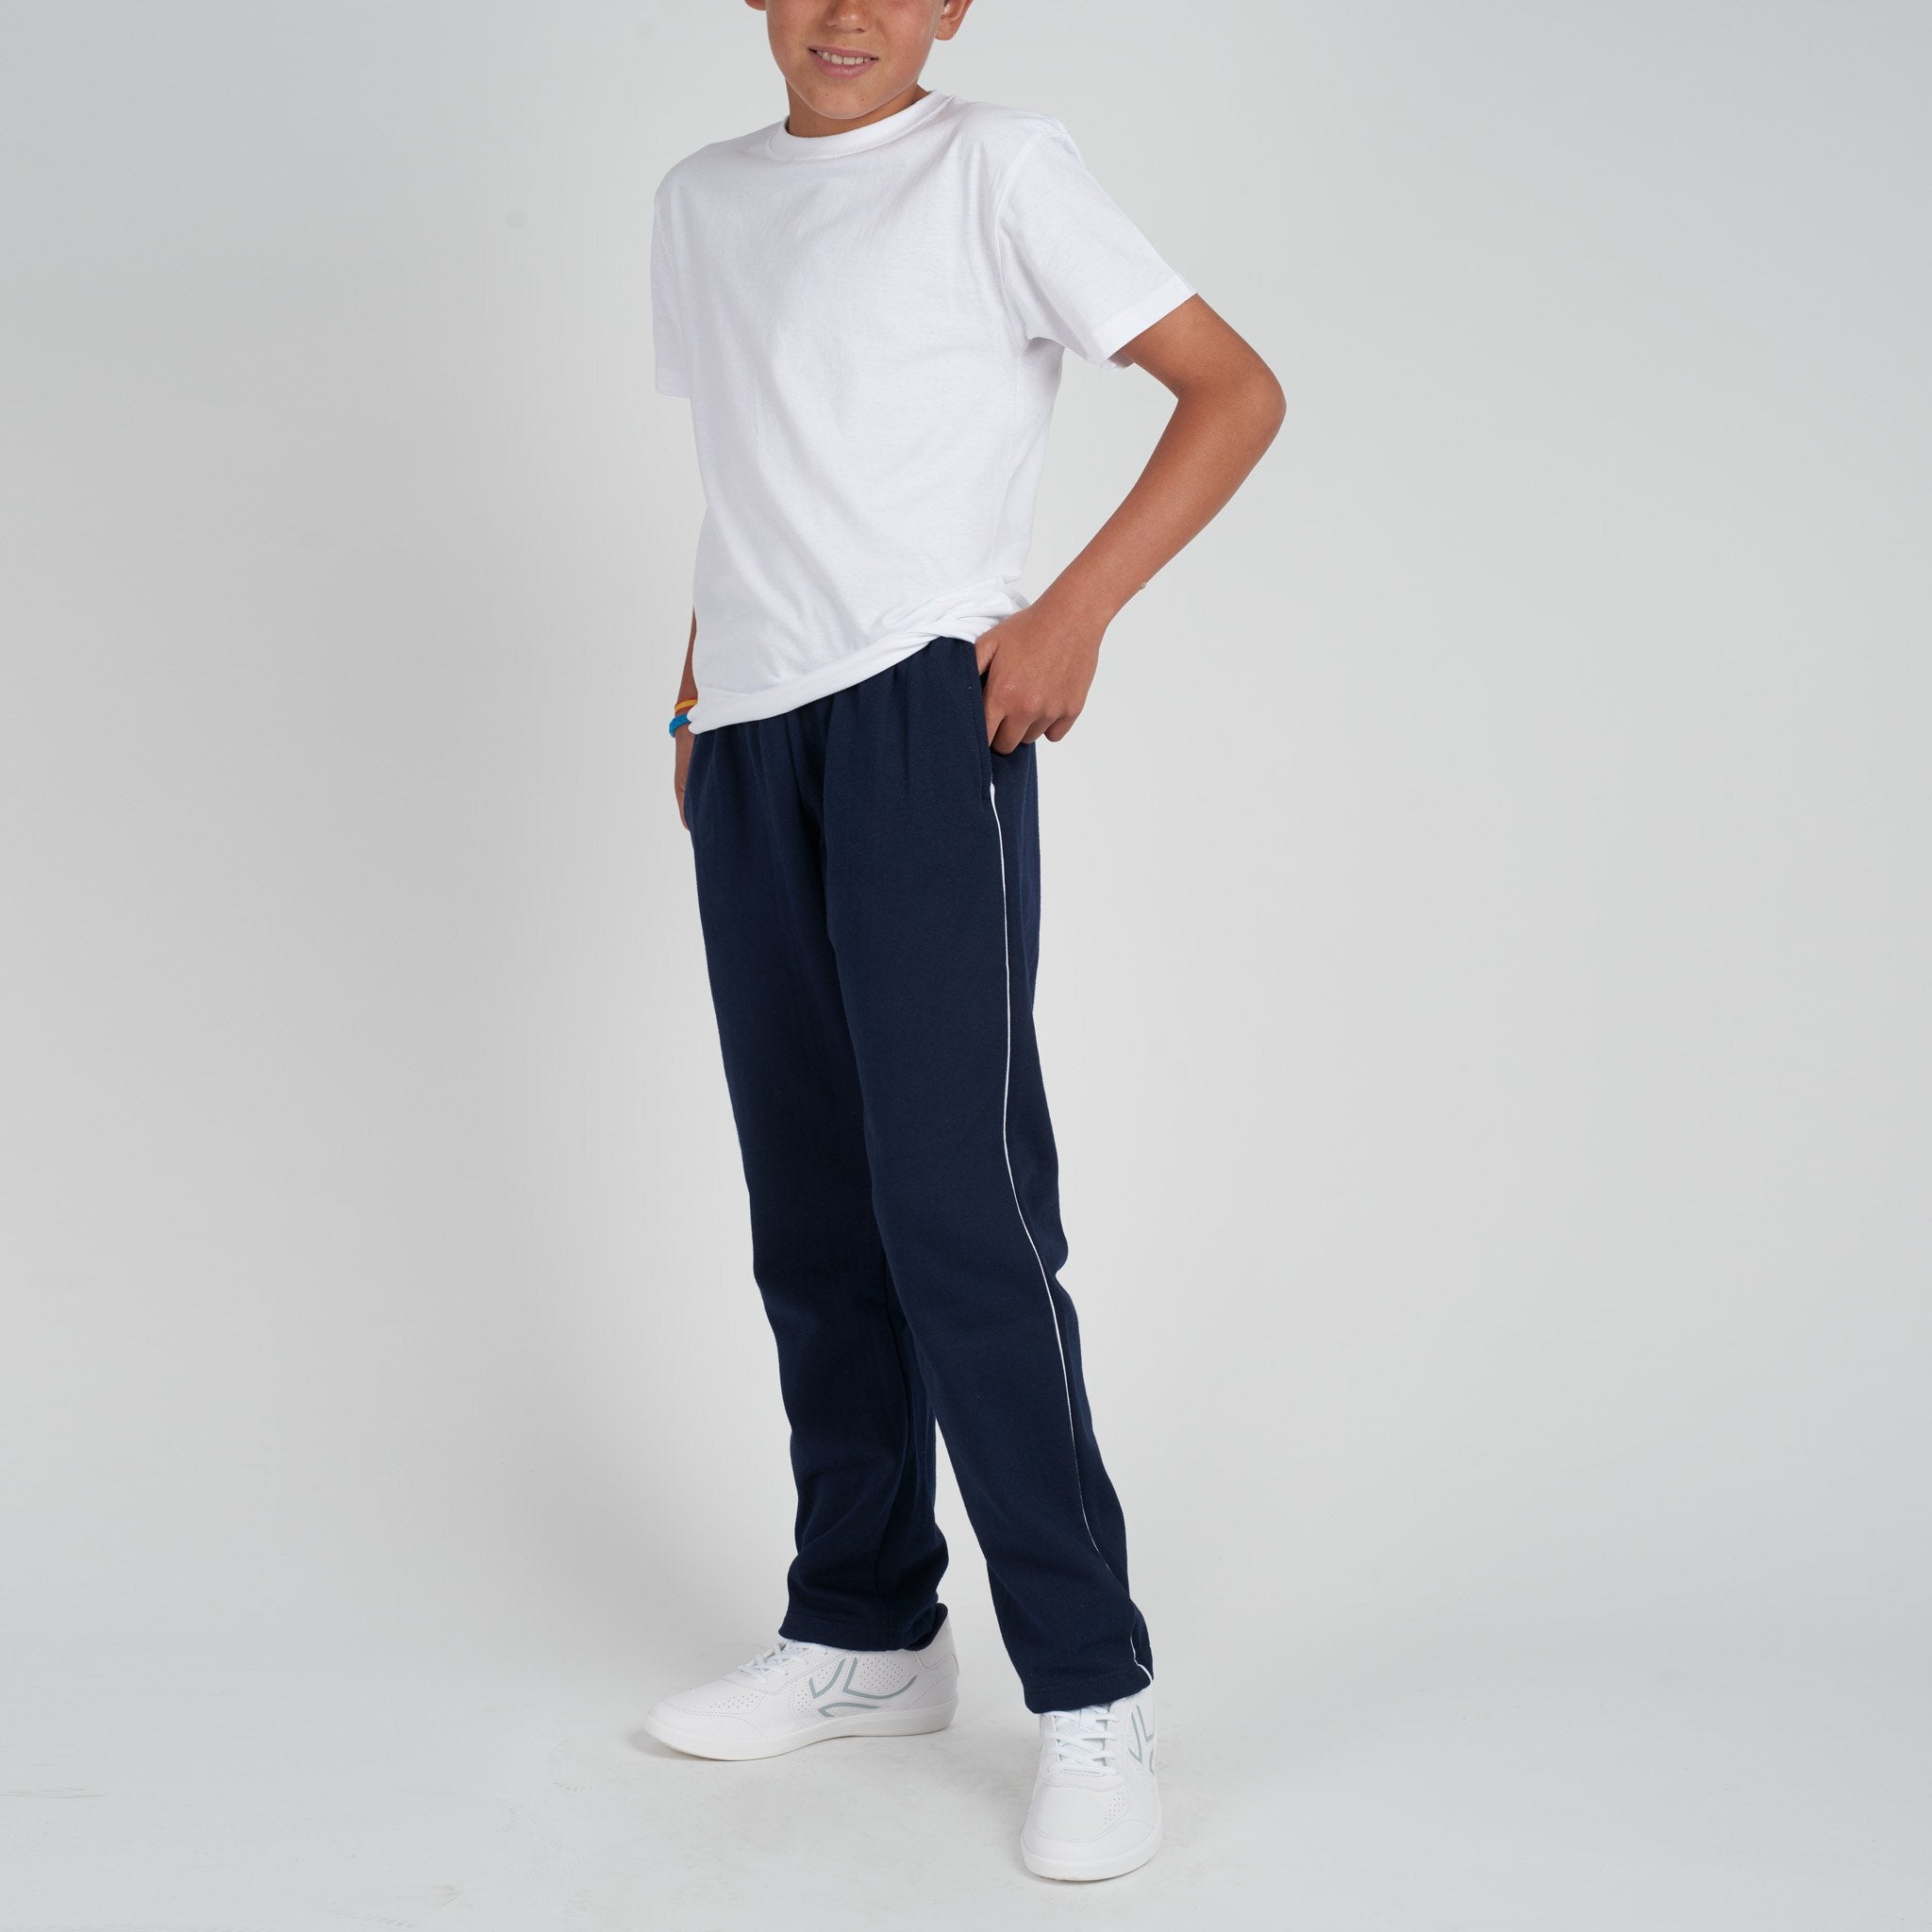 Pantalón Chándal Azul Lateral Blanca | Uniforme escolar – TodoParaelCole